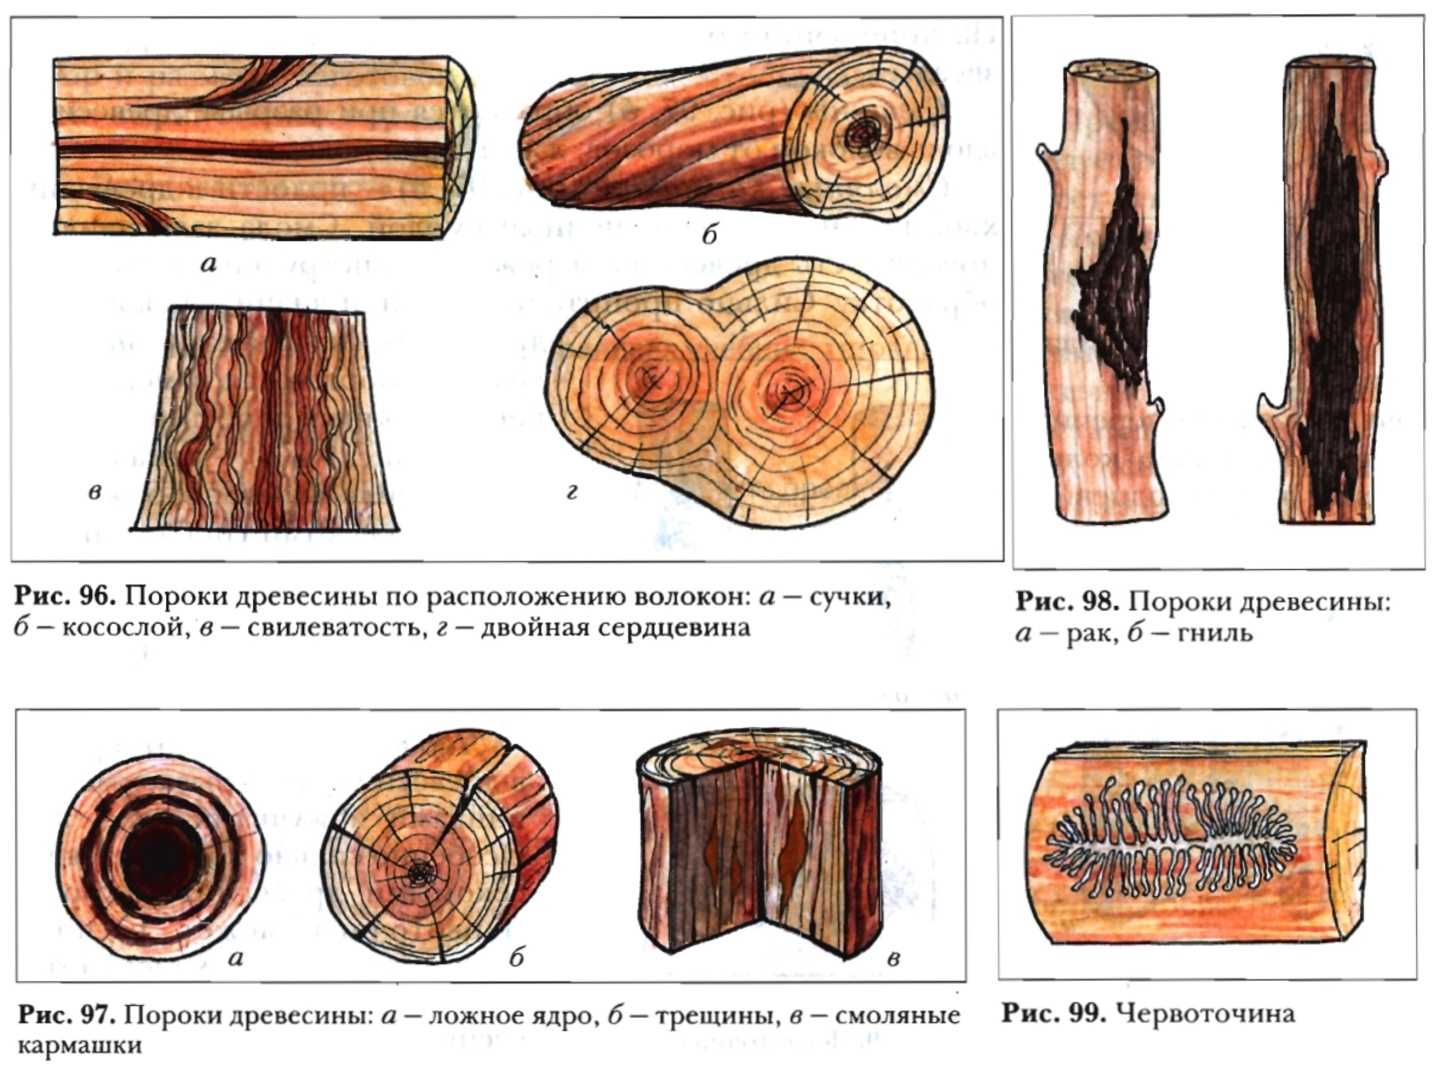 Пороки древесины пороки строения древесины